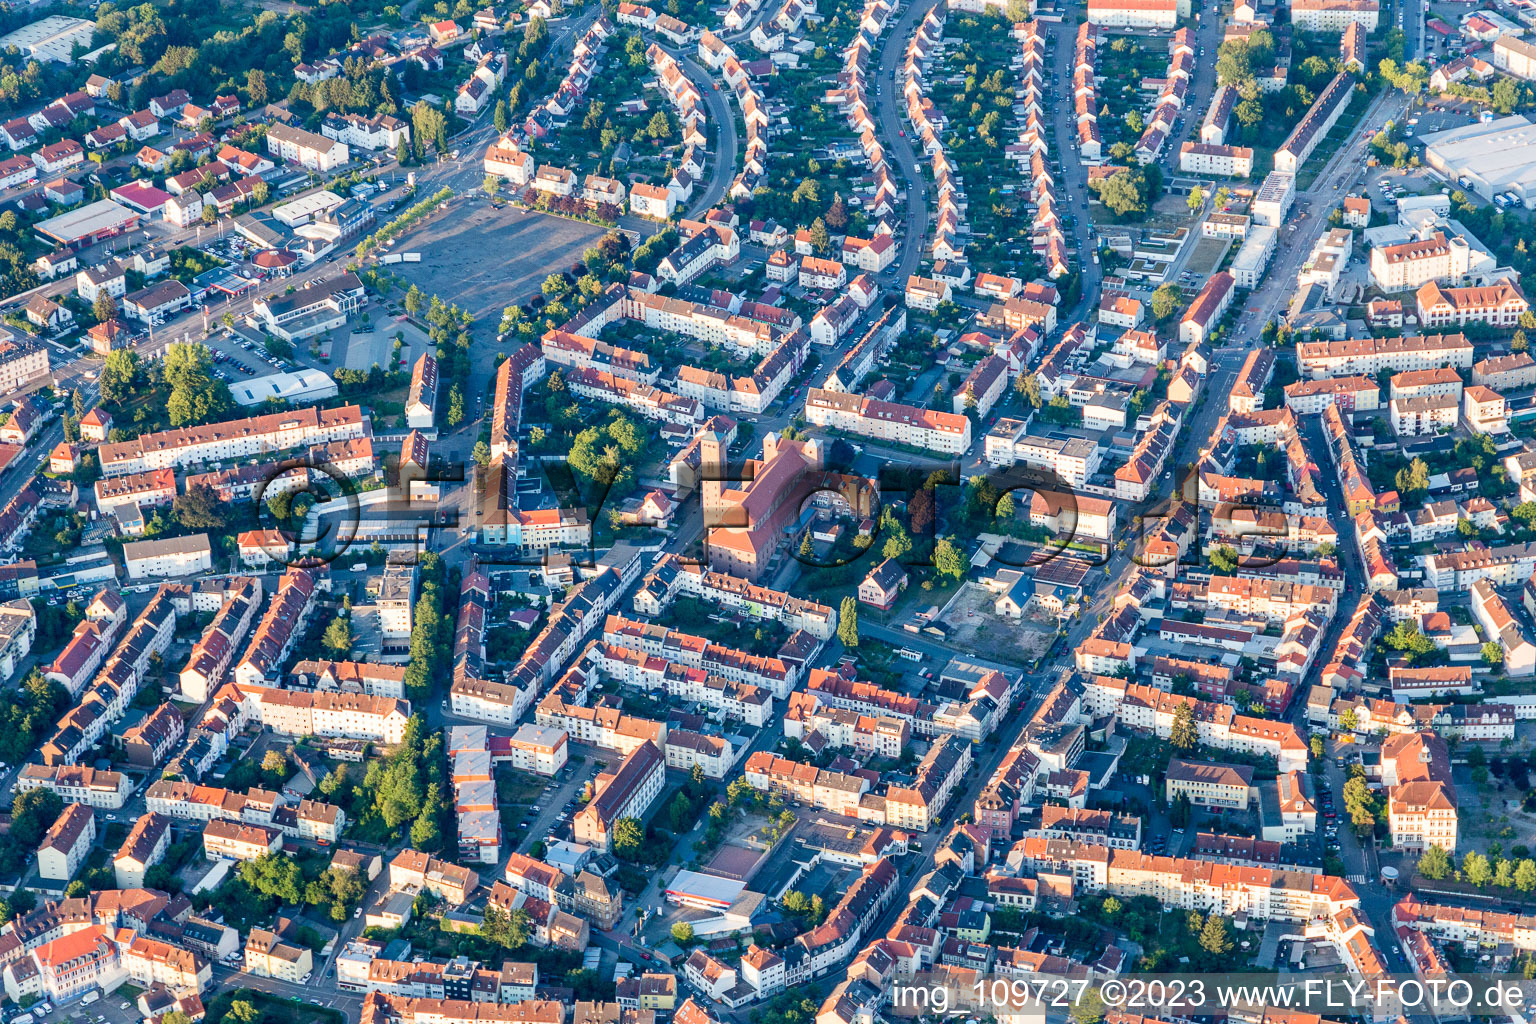 Pirmasens im Bundesland Rheinland-Pfalz, Deutschland aus der Drohnenperspektive